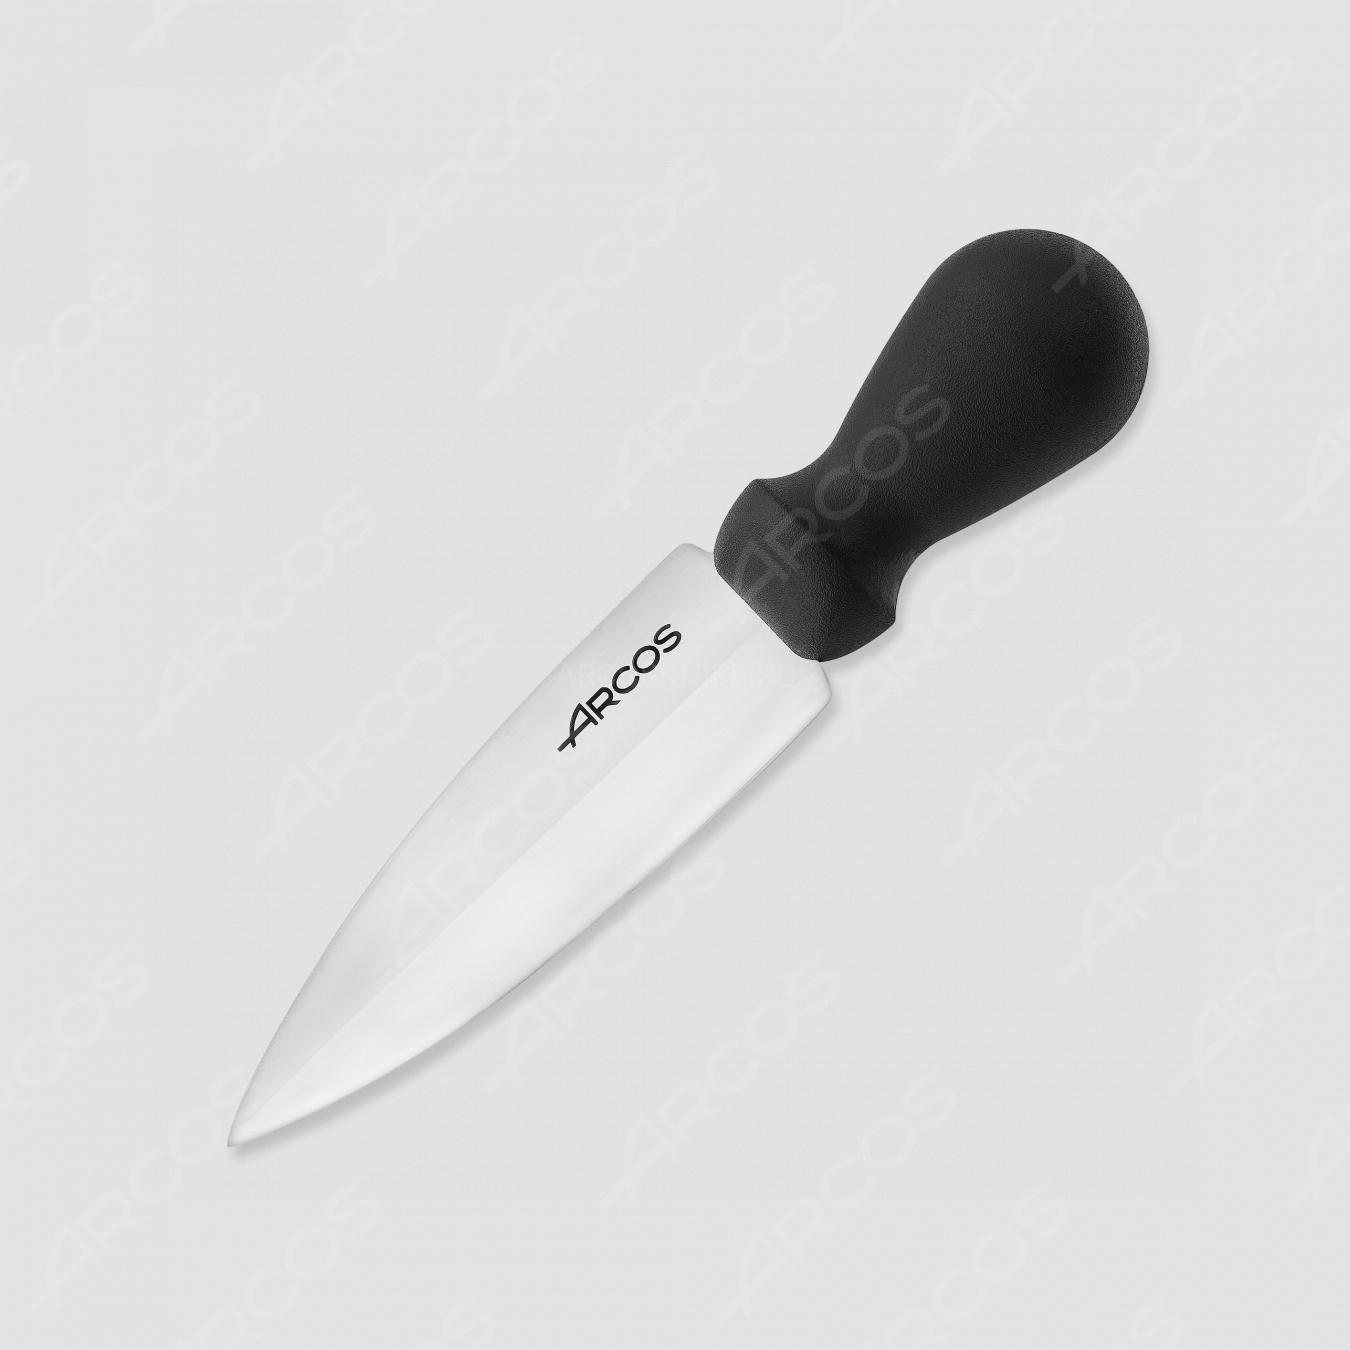 Нож для сыра пармезан, 14 см, серия Profesionales, ARCOS, Испания